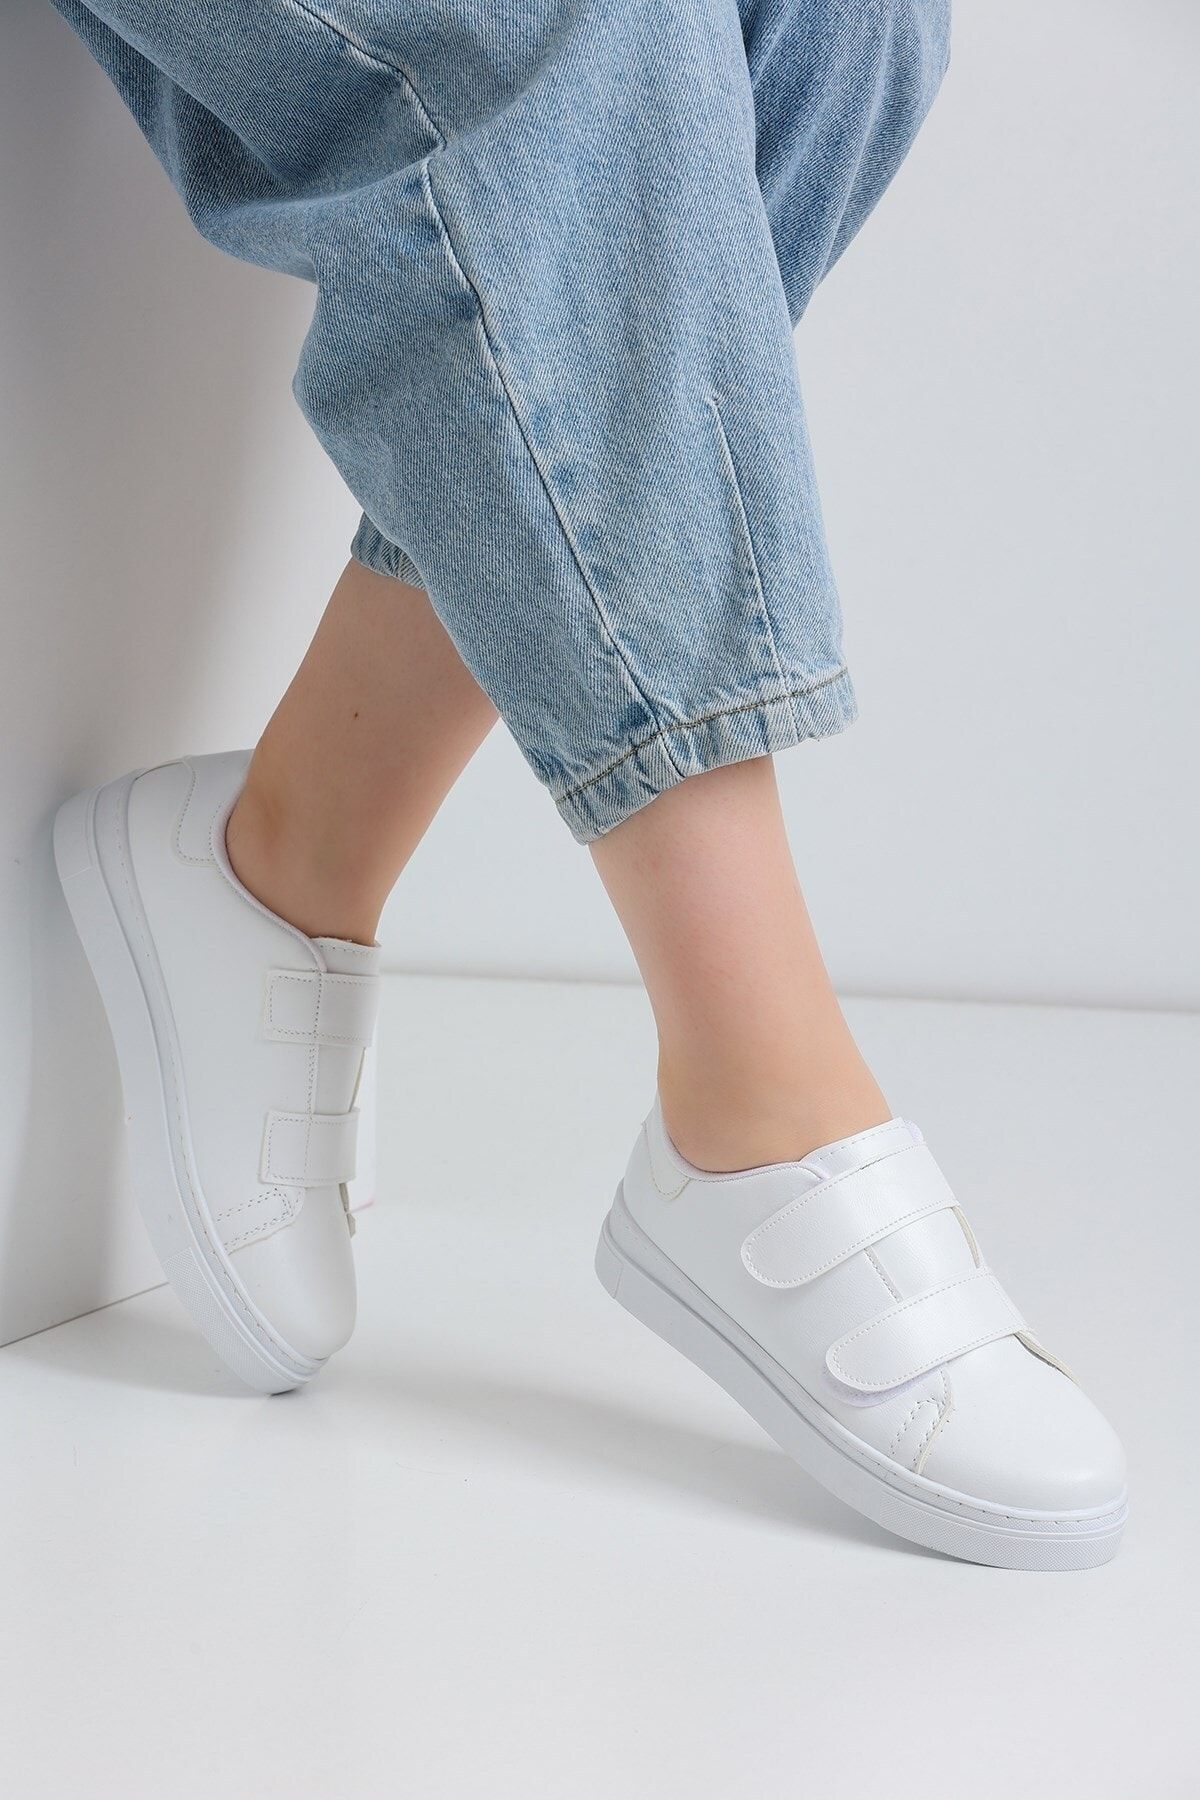 ALTUNTAŞ Unisex Cırt Cırtlı Outdoor Sneaker Modeli - Beyaz